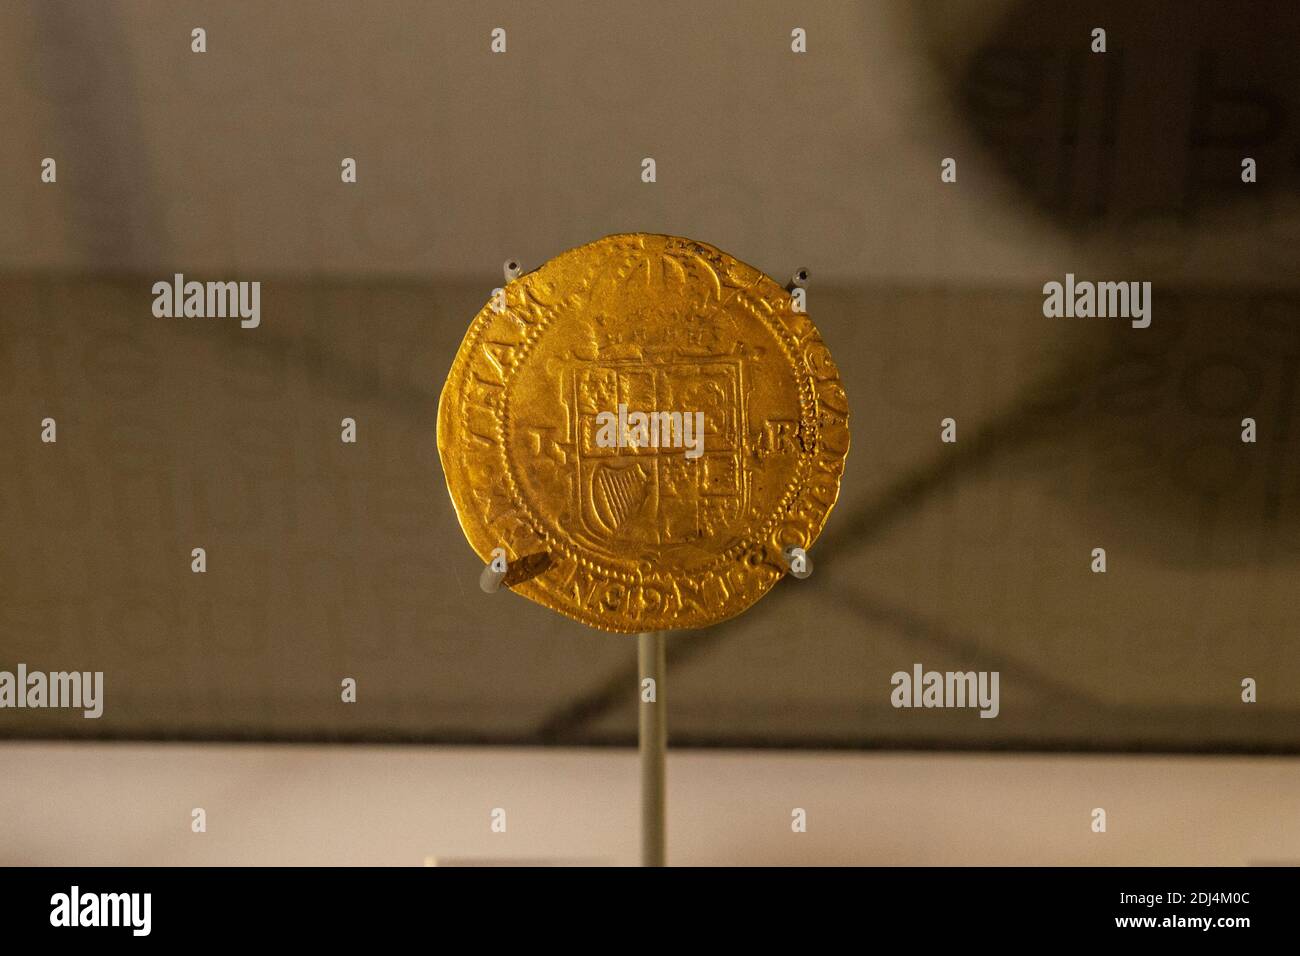 Nahaufnahme einer James 1st Unite 1615-16 Reverse Goldmünze, National Civil war Center, Newark Museum, Newark, Notts, Großbritannien. Stockfoto